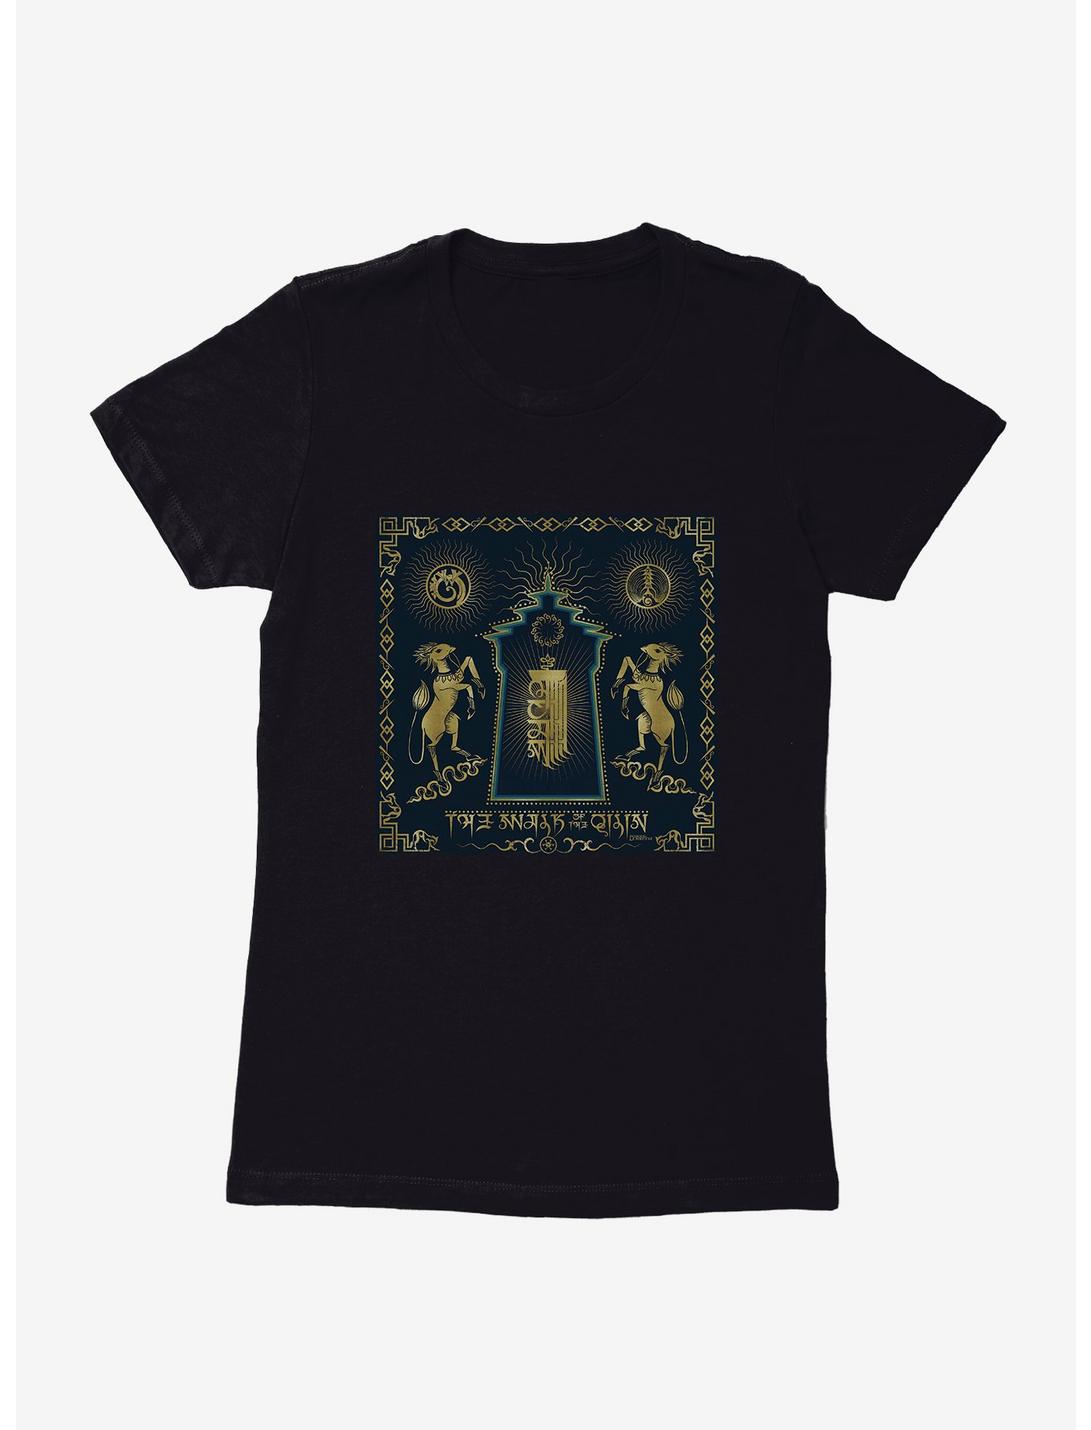 Fantastic Beasts: The Secrets Of Dumbledore Four Qilin's Womens T-Shirt, , hi-res